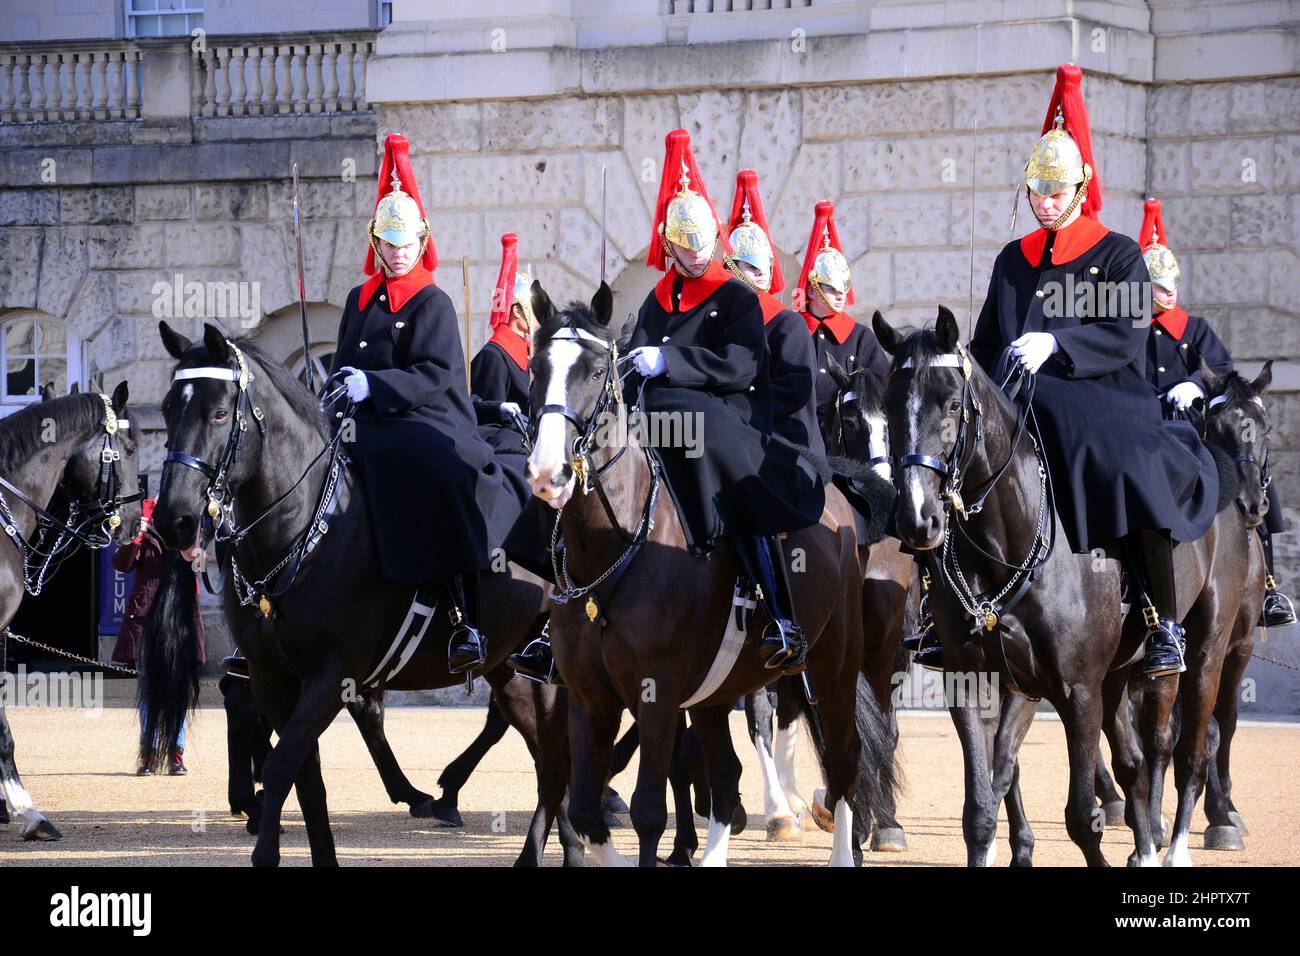 La cérémonie de changement de la Queen's Life Guard à l'occasion de la parade des gardes à cheval, Londres, Royaume-Uni. Soldats du régiment de cavalerie de la maison, des Bleus et des Royals. Banque D'Images